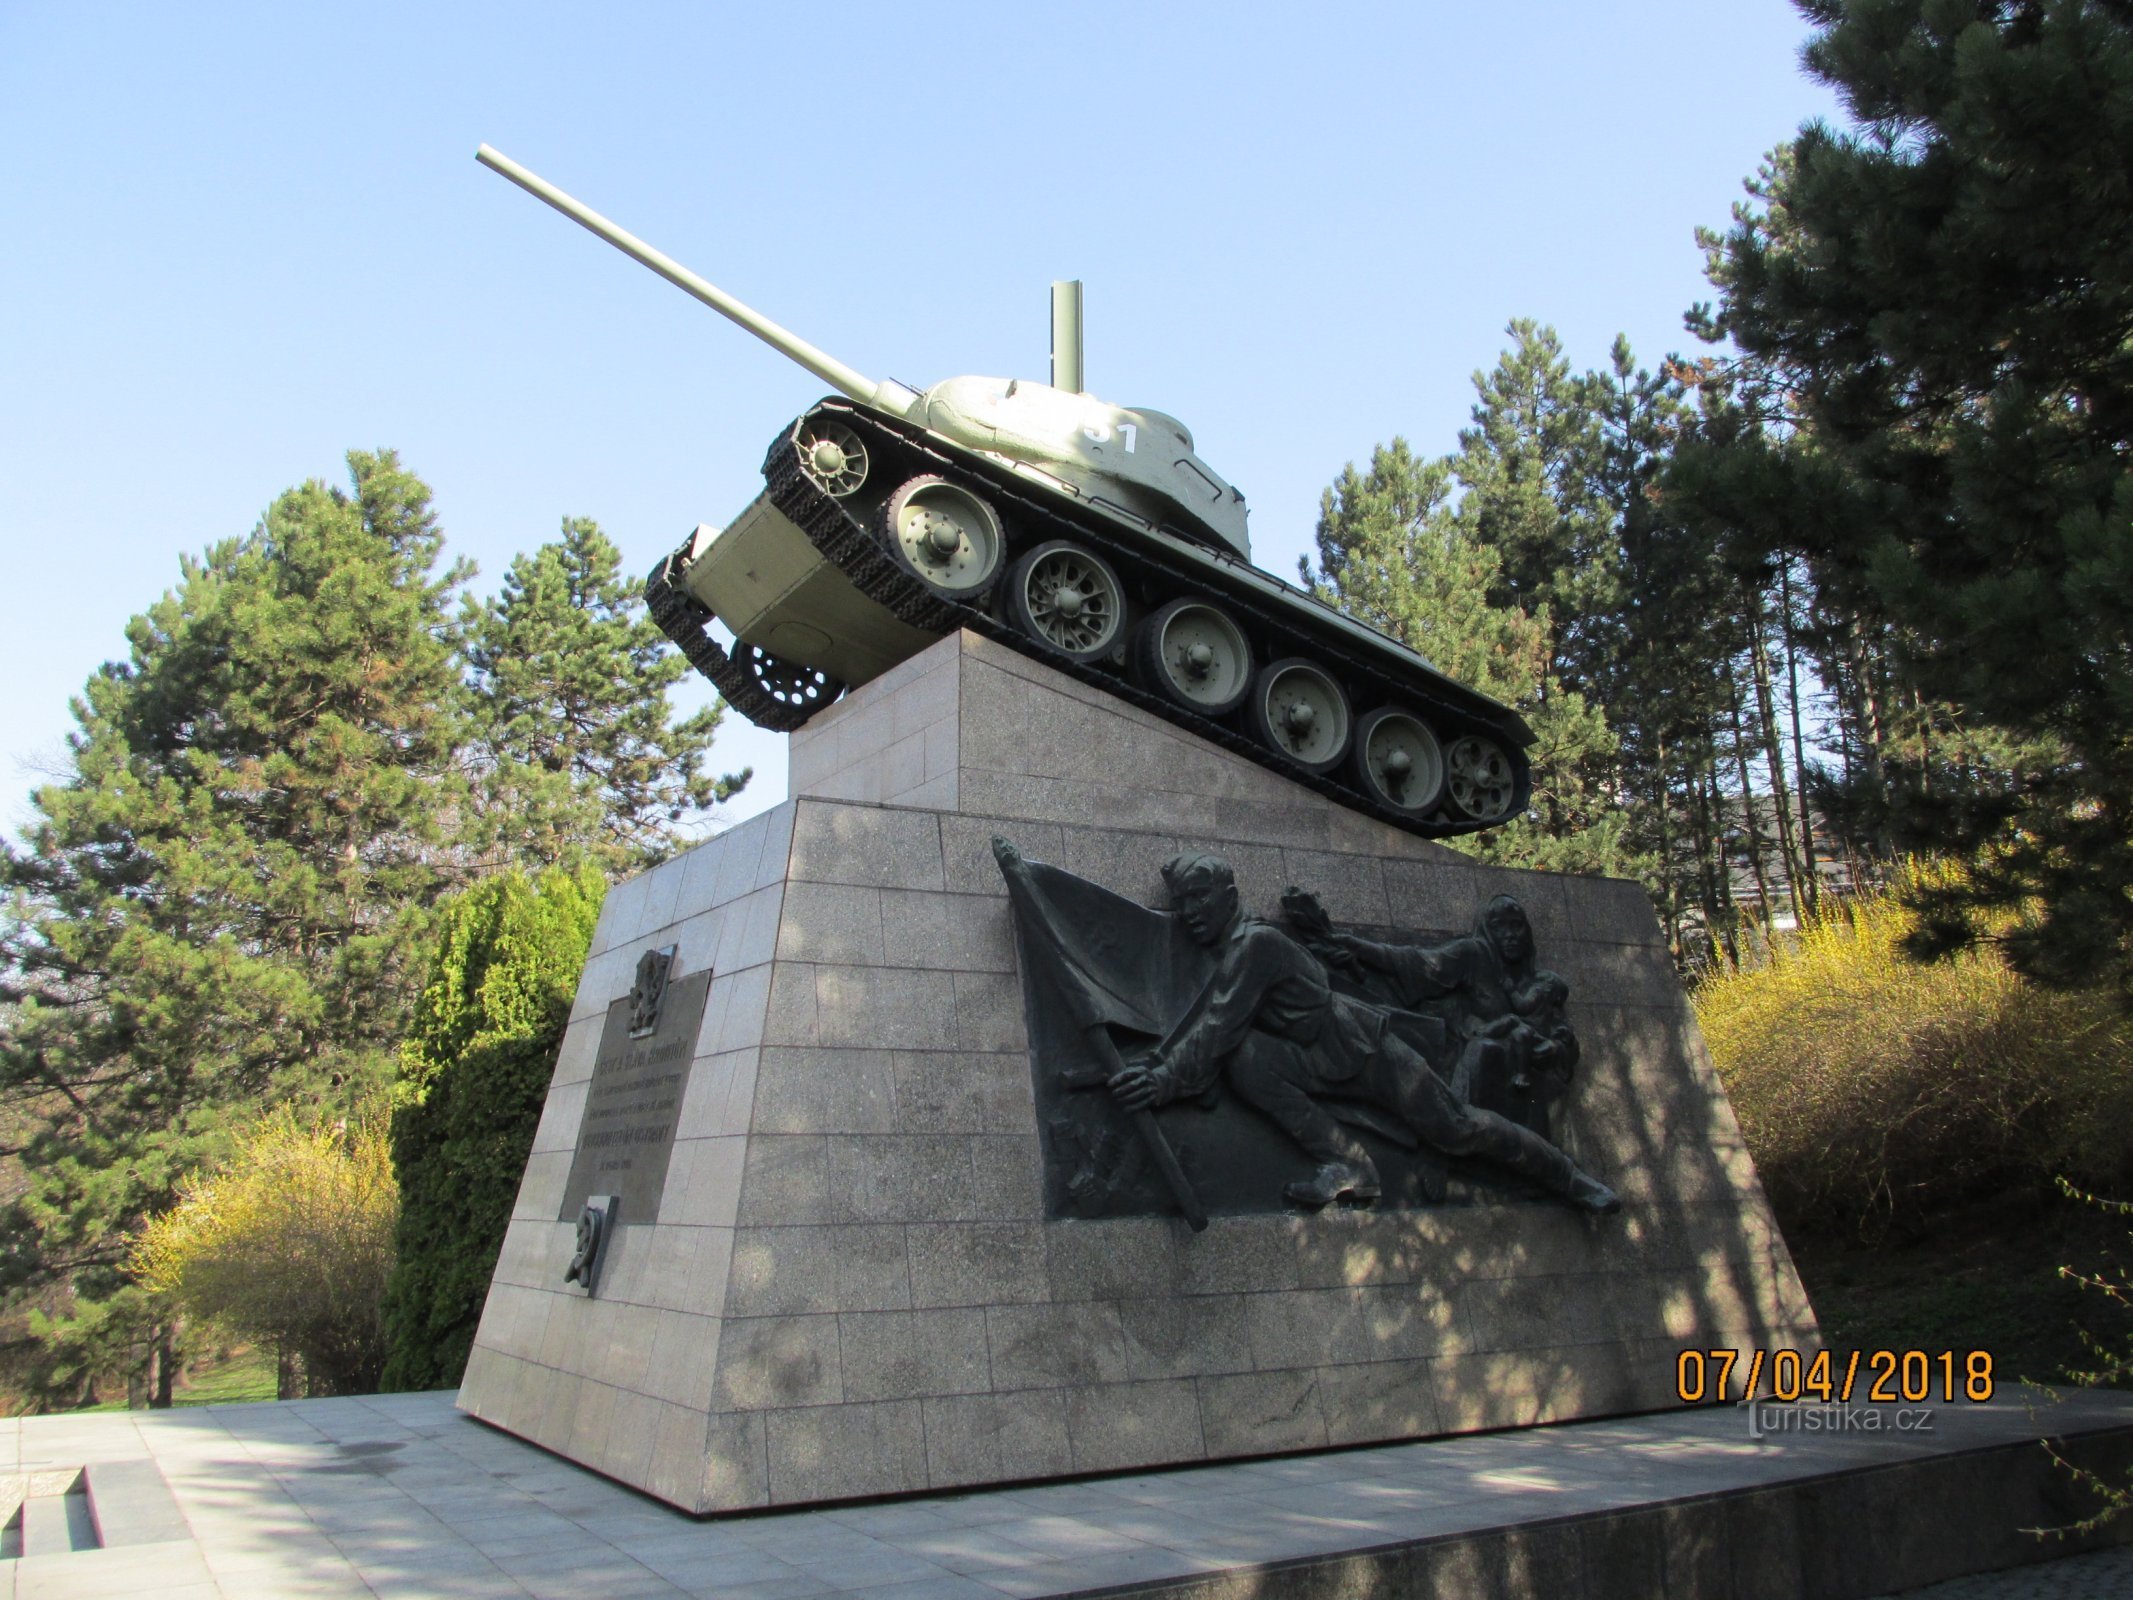 De tank die Ostrava . heeft bevrijd